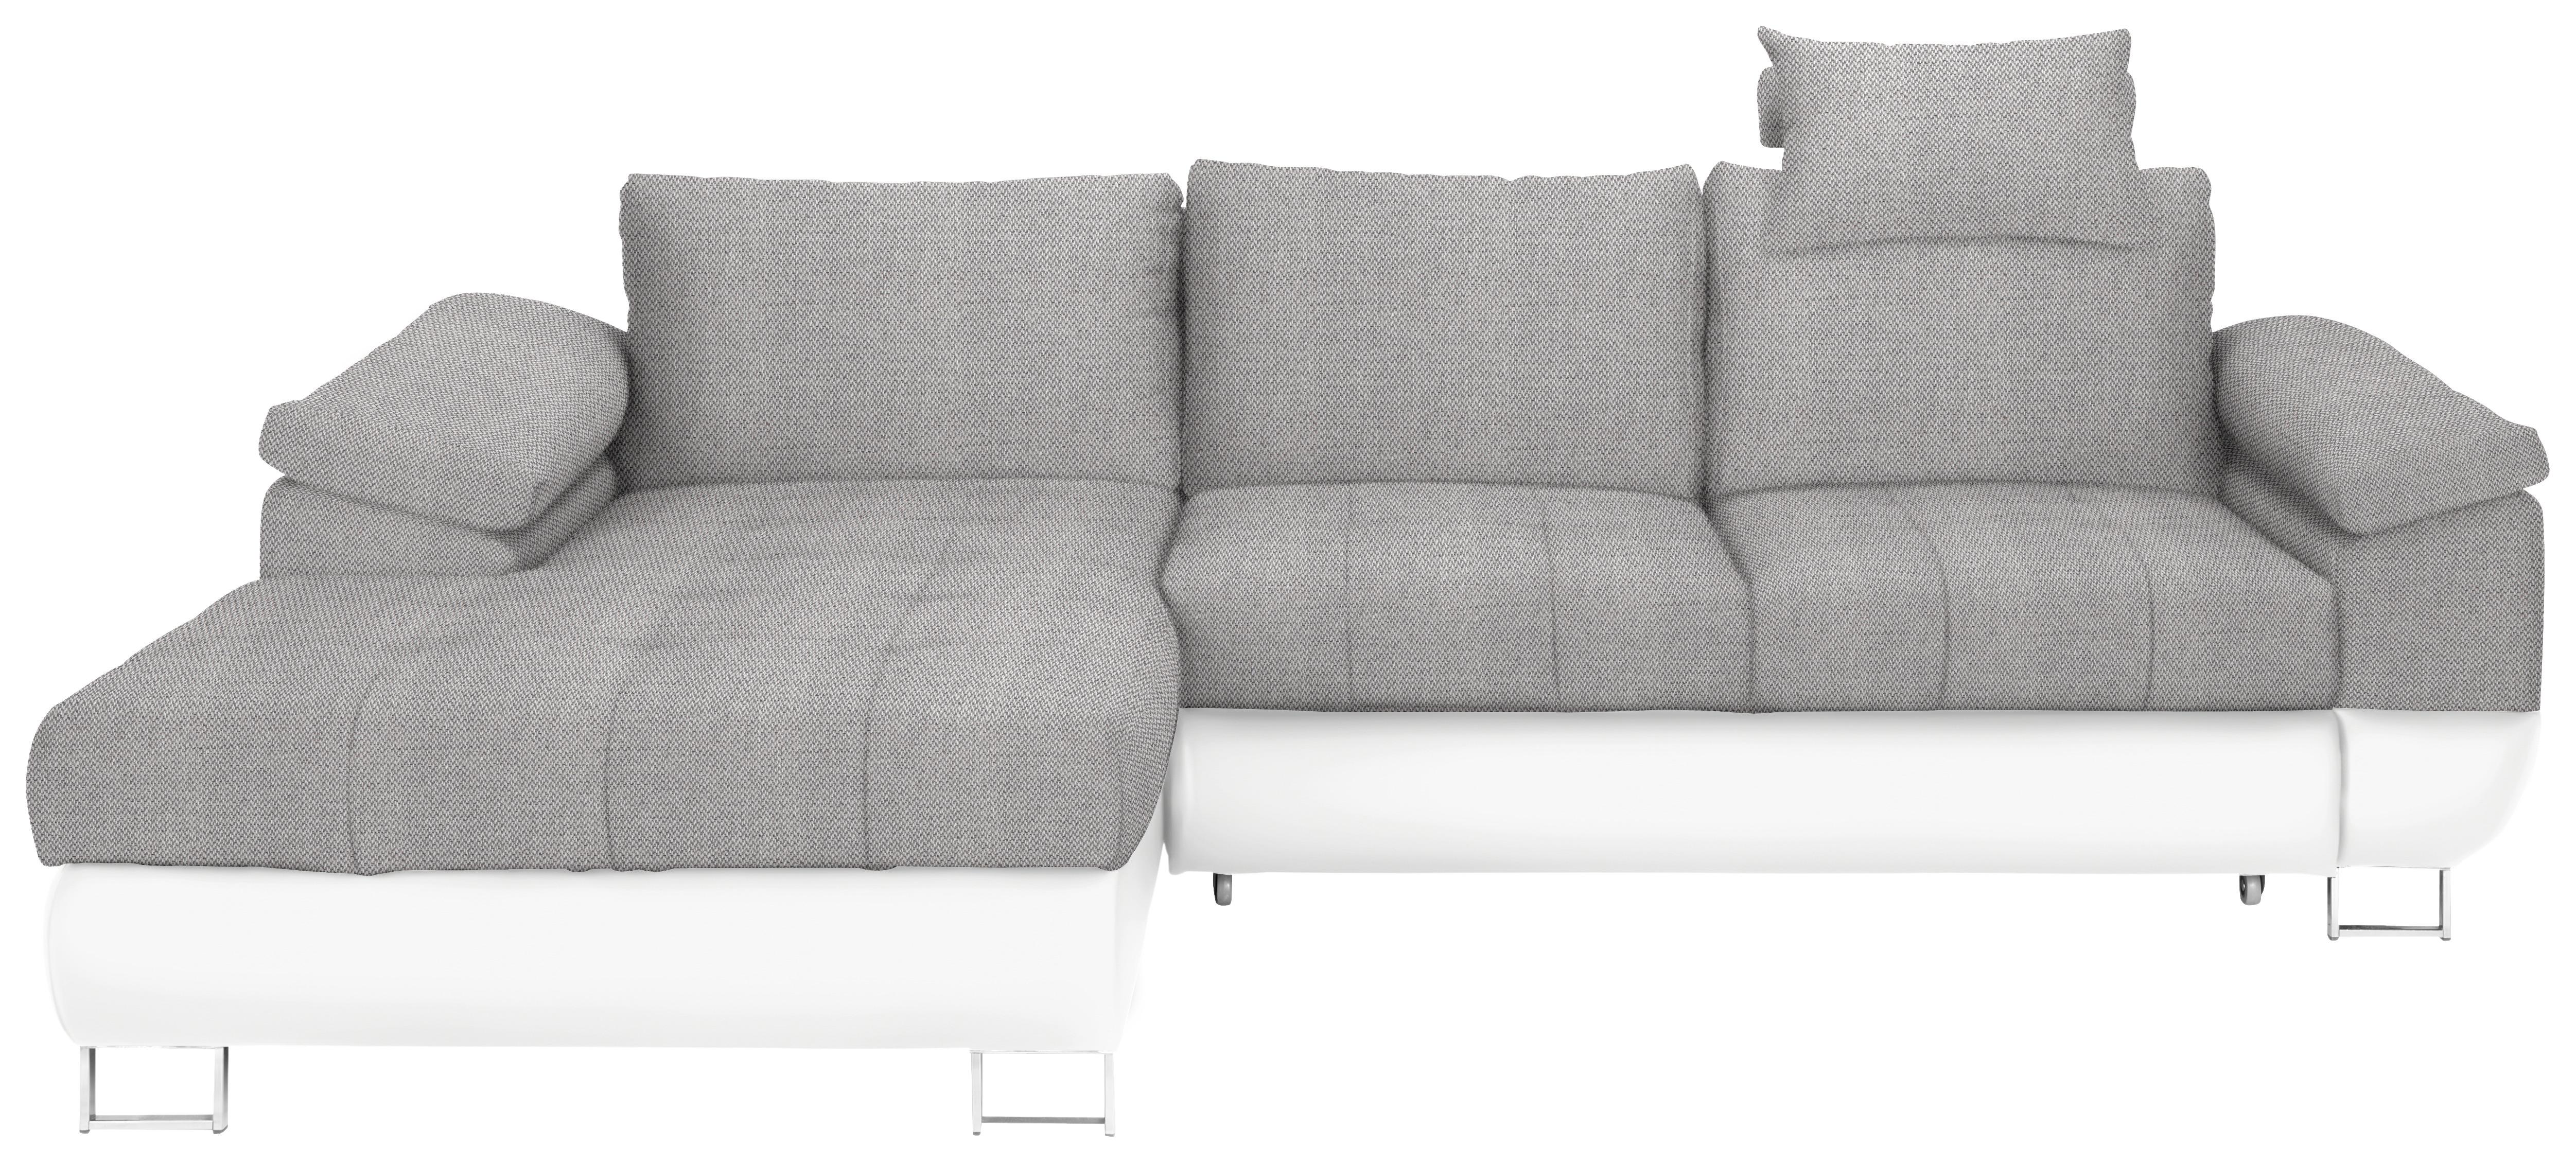 Wohnlandschaft in Grau/Weiß mit Bettfunktion - Chromfarben/Weiß, MODERN, Kunststoff/Textil (170/268cm) - Based